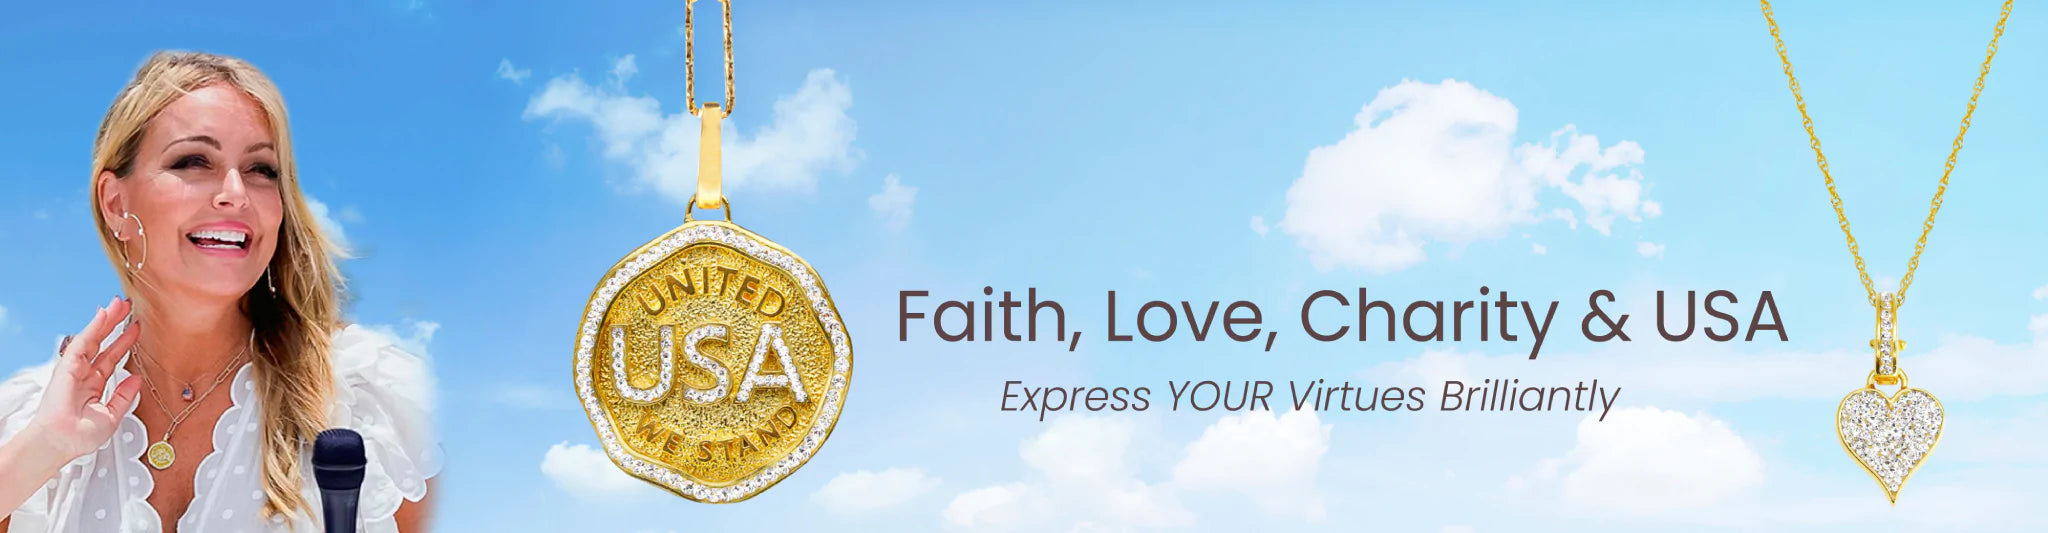 Faith, Love, Charity & USA